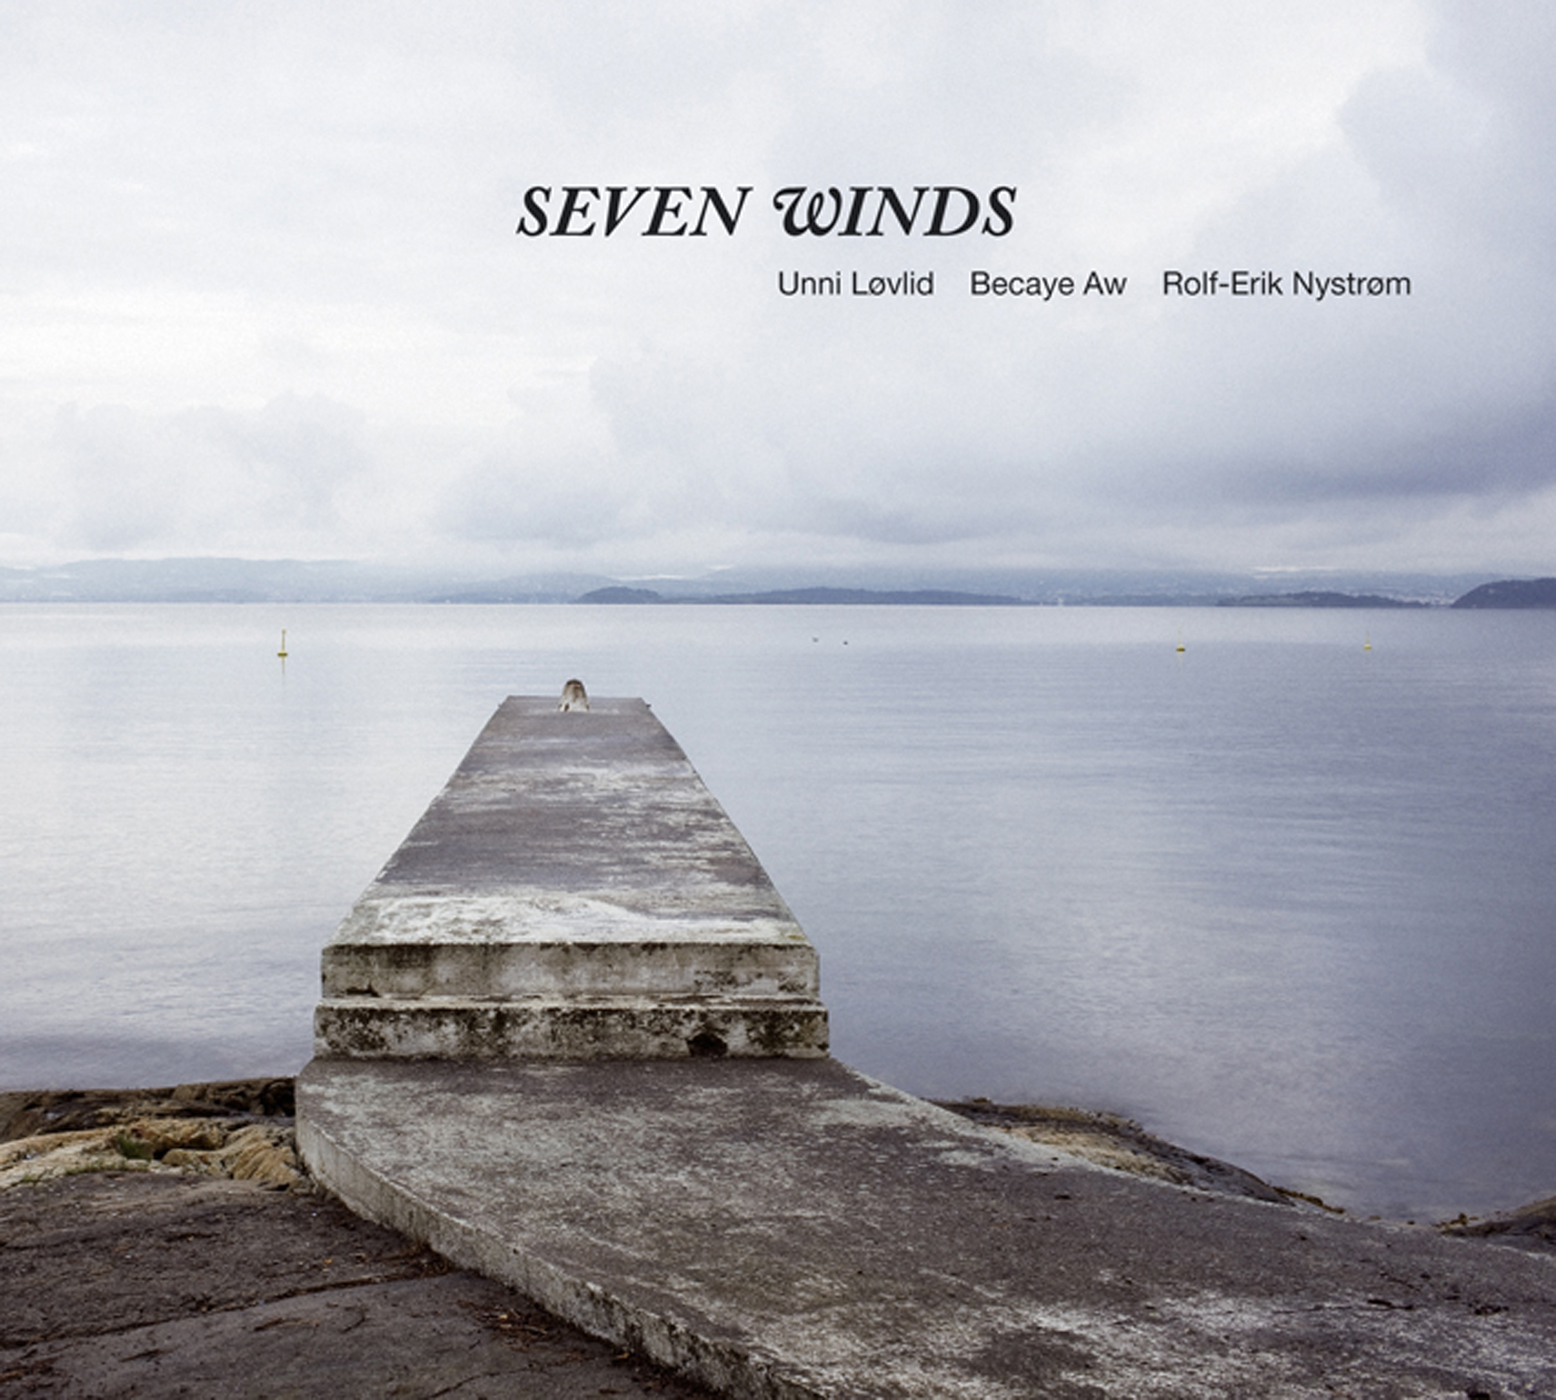 Seven winds studio. Seven Winds. Seven Winds Russia.